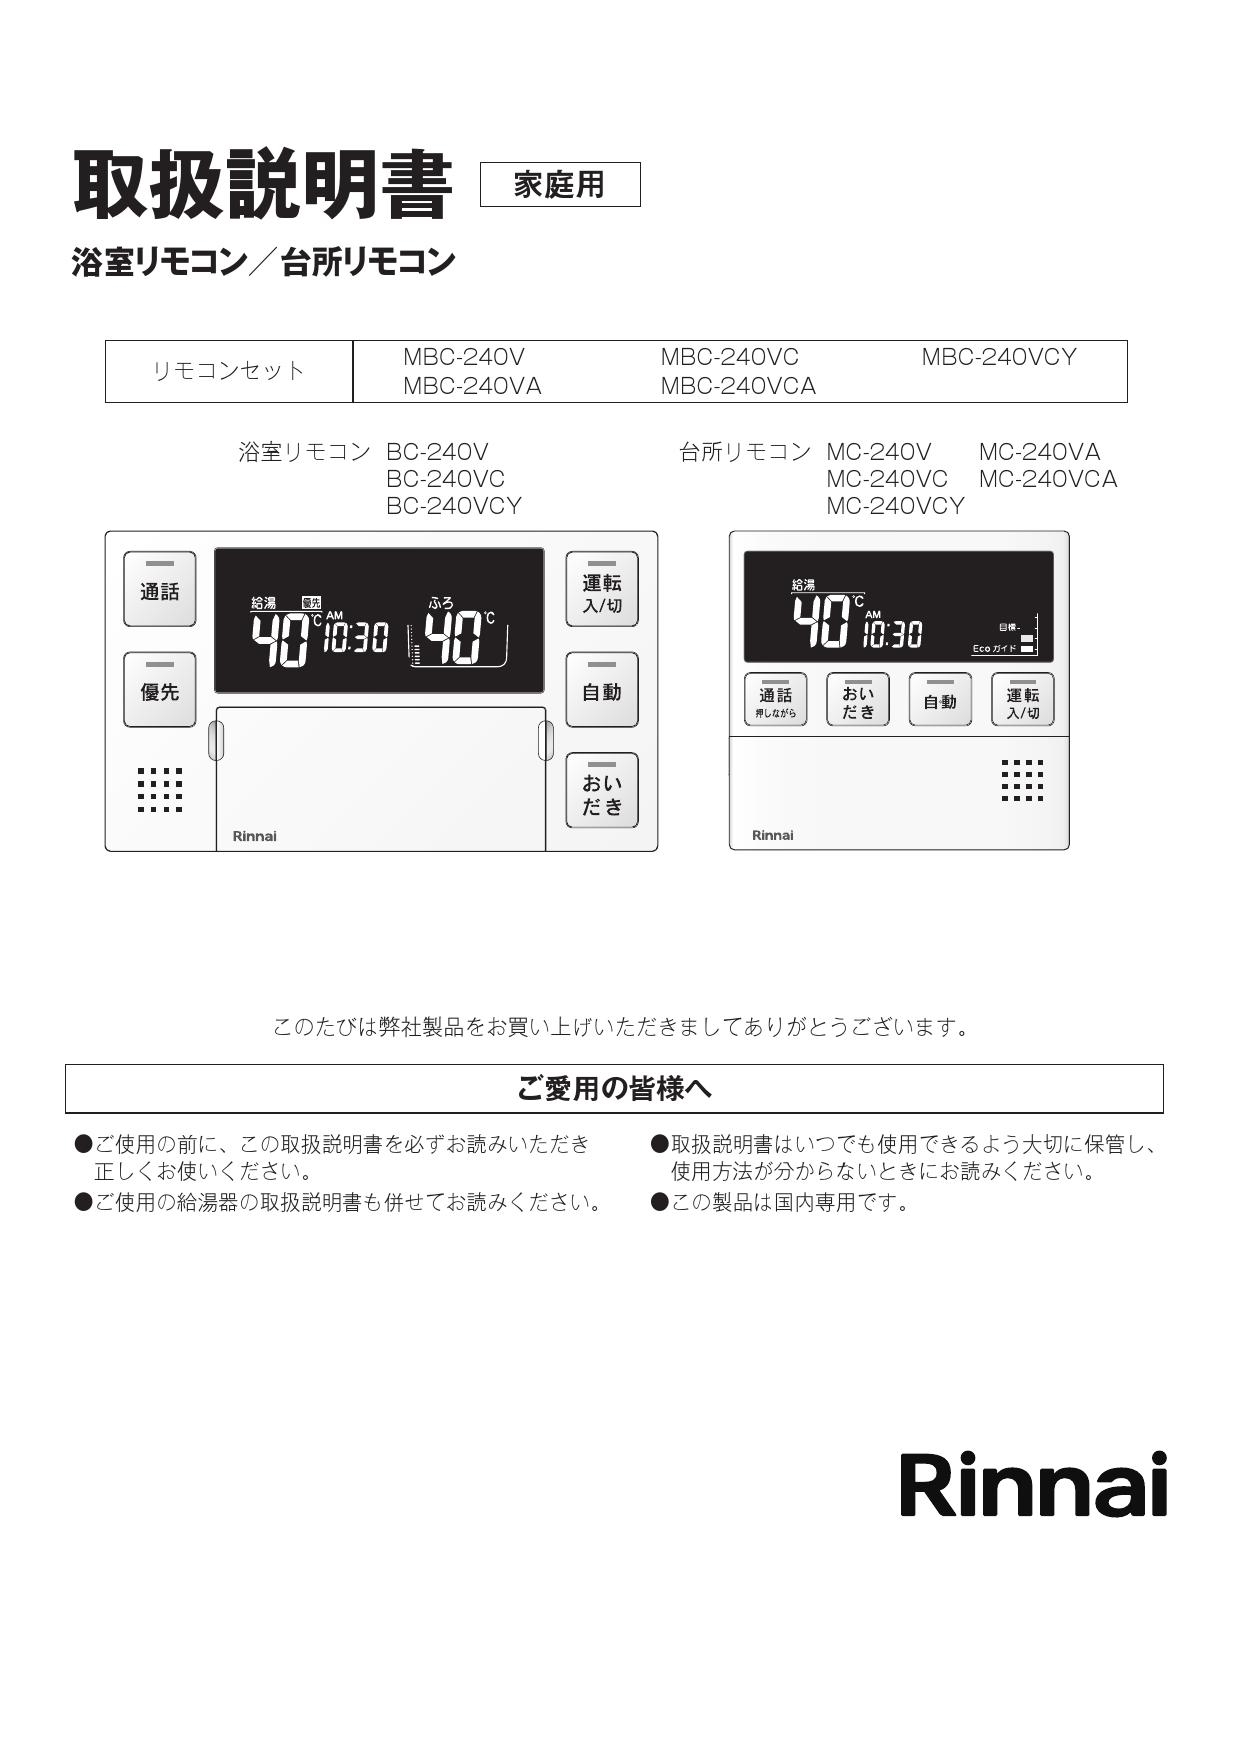 誠実】 MBC-MB240VC A MBC-240シリーズ リンナイ セットリモコン 品名コード 